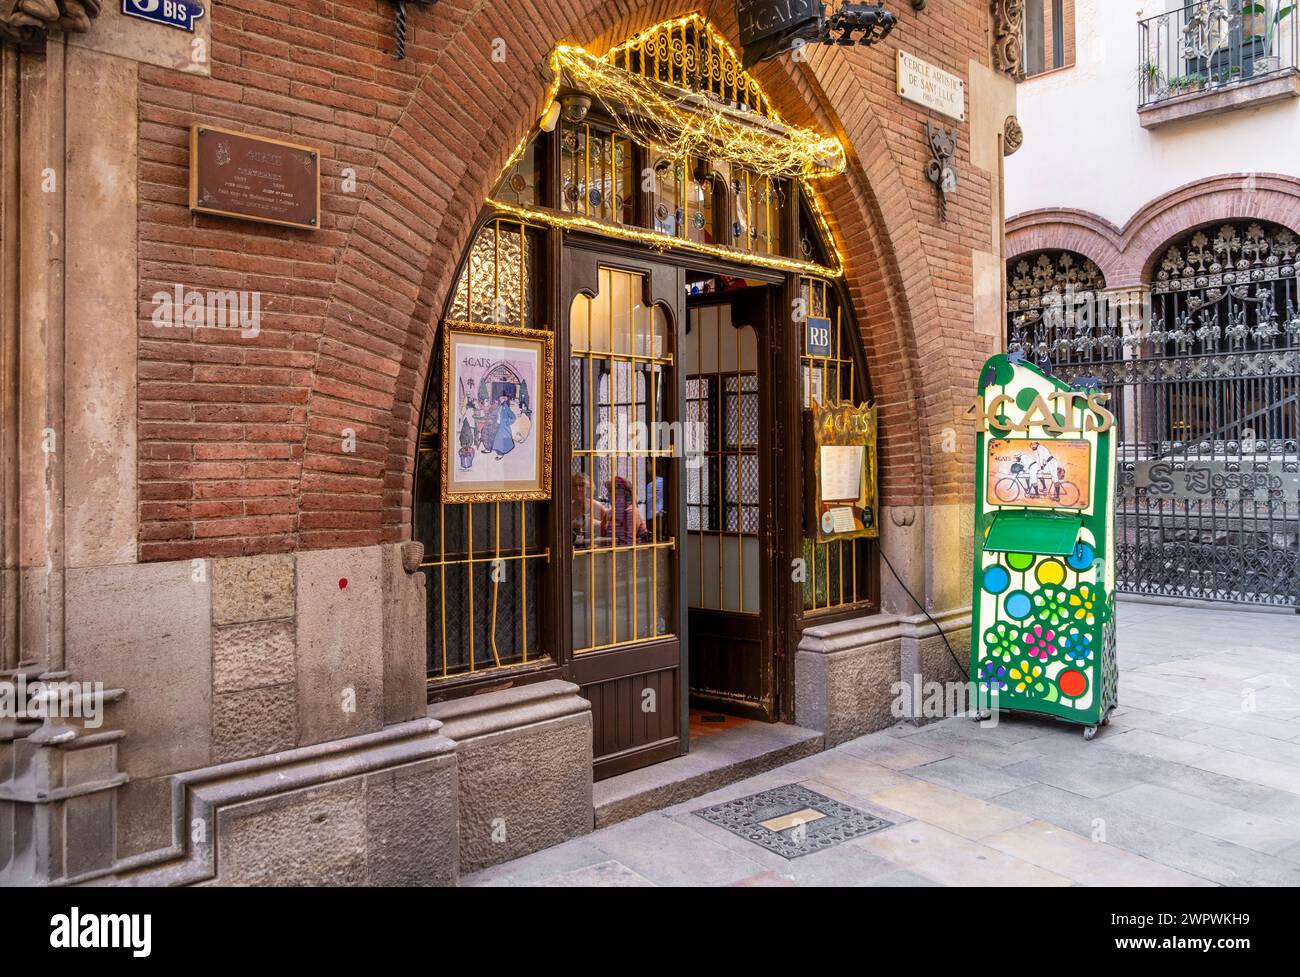 Haupteingang des Quatre GATS oder des Four Cats Cafés in Barcelona, ein beliebter Treffpunkt für berühmte Künstler in der ganzen Stadt Stockfoto